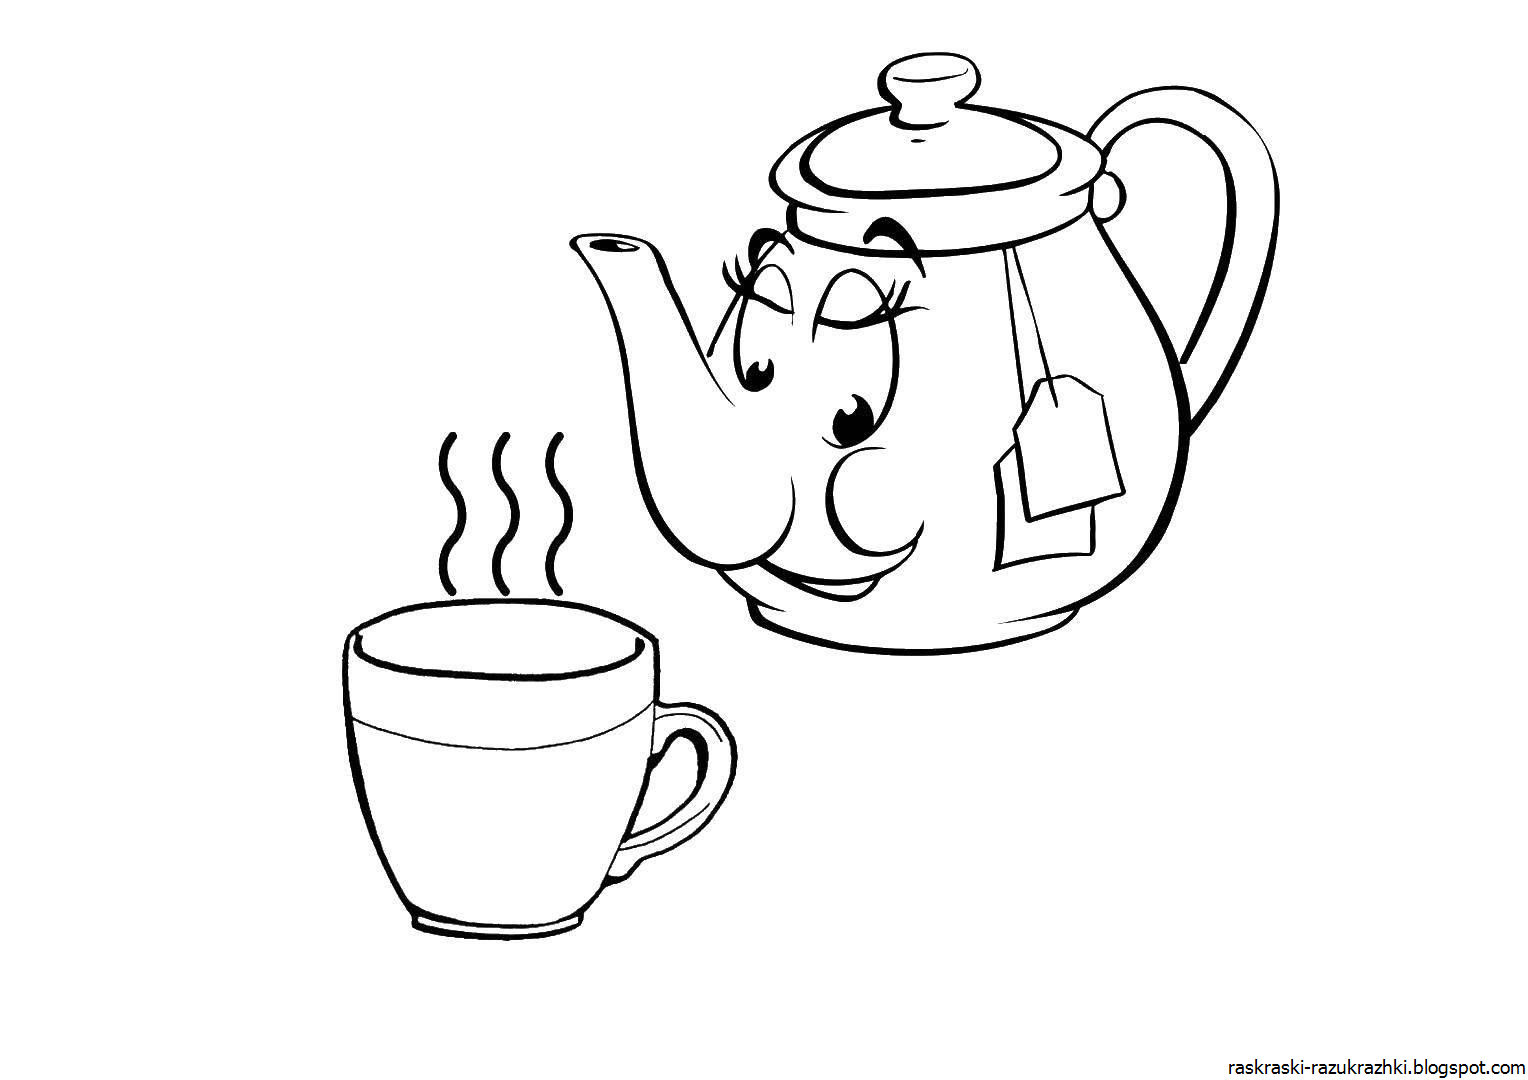 Петушок пьет чай у самовара - раскраска №984